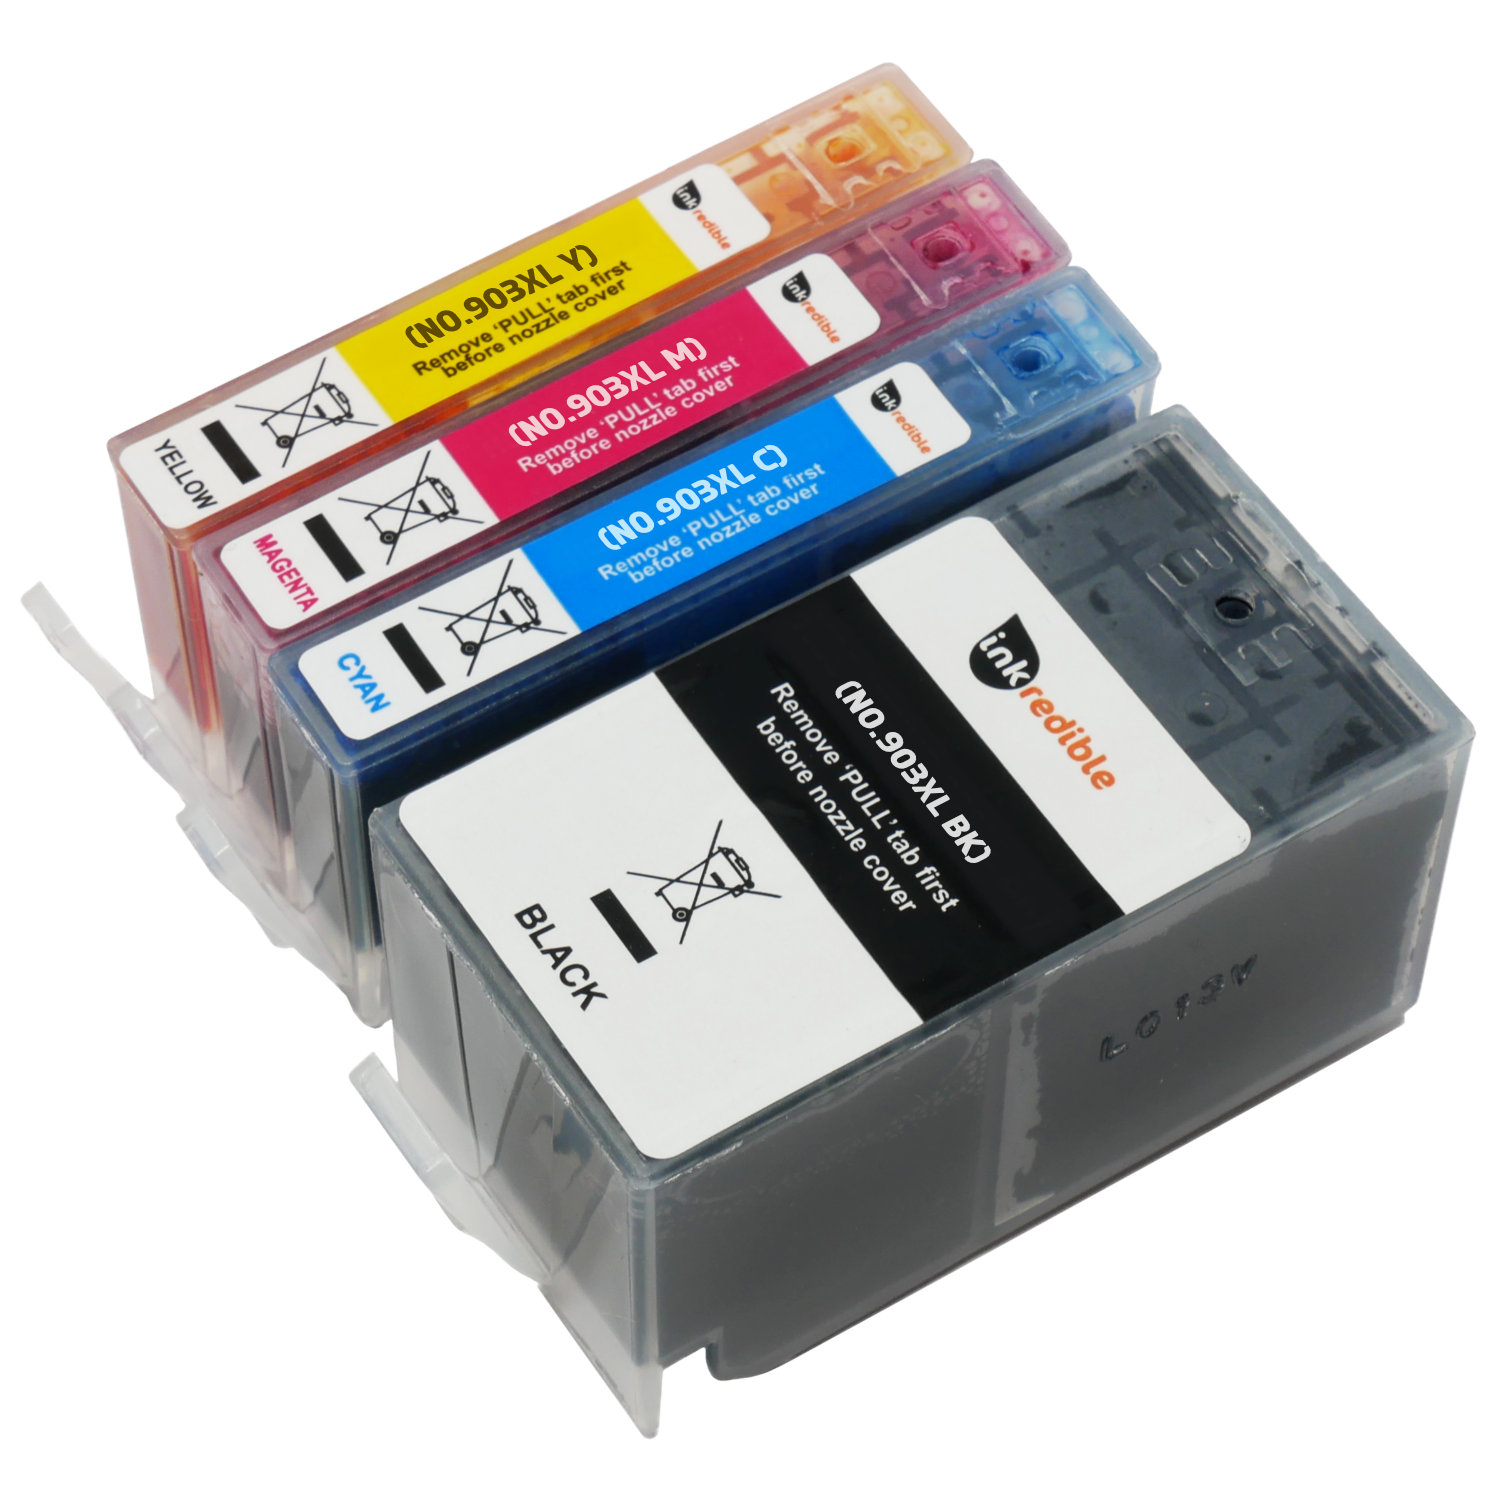 Cartouches d'encre compatibles pour imprimante tout-en-un, pour HP904 XL  Impresora Todo-en-Uno HP OfficeJet Pro 6960 6970, 1 ensemble - AliExpress